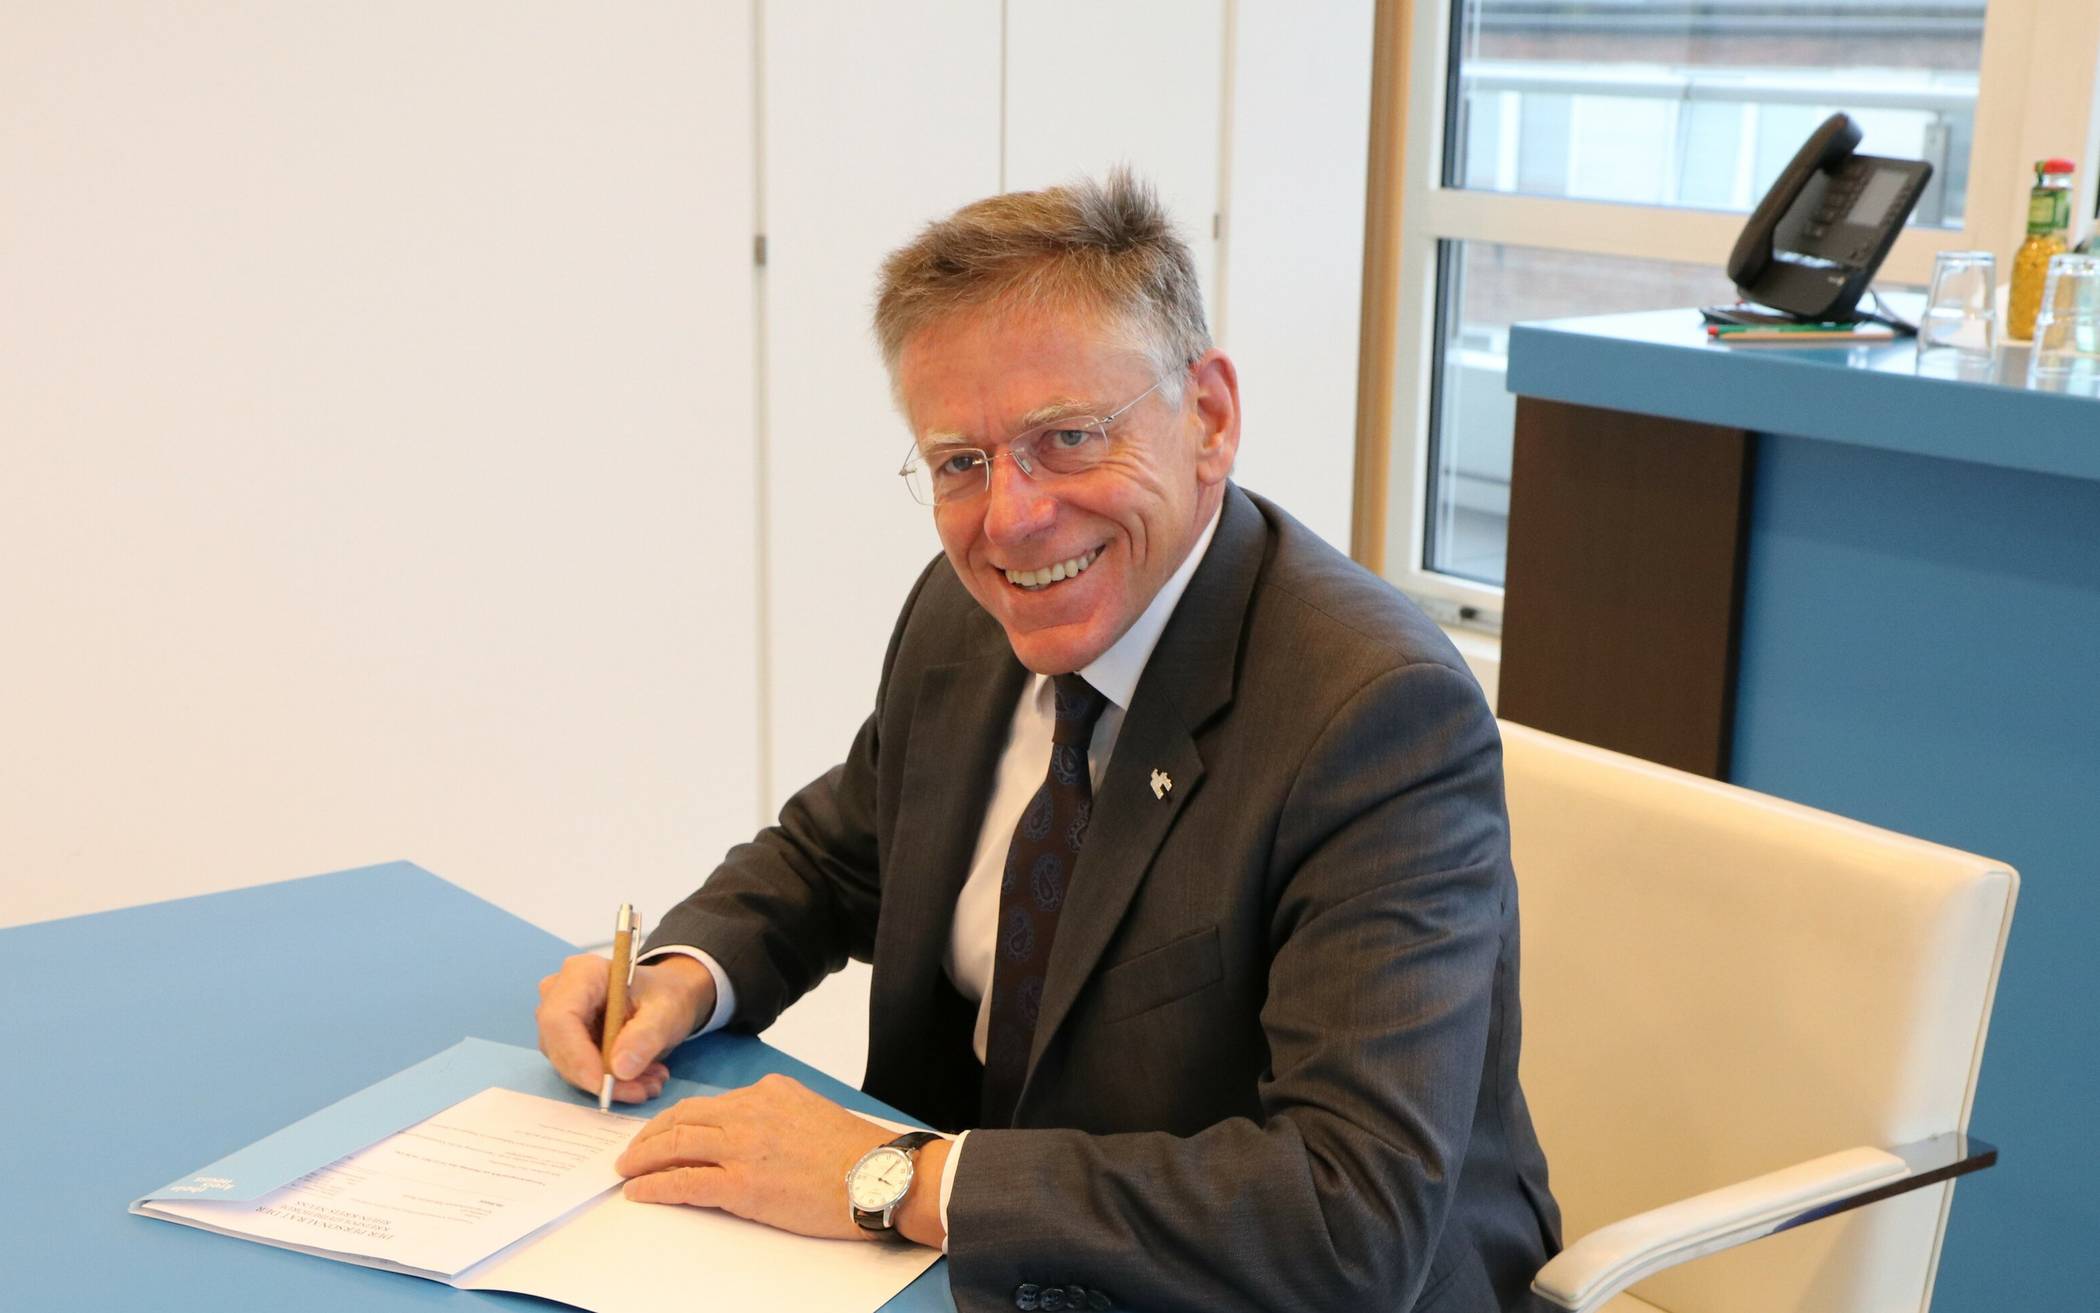  Hans-Jürgen Petrauschke, Landrat und Leiter der Kreispolizeibehörde Rhein-Kreis Neuss, bei der Unterzeichnung. 